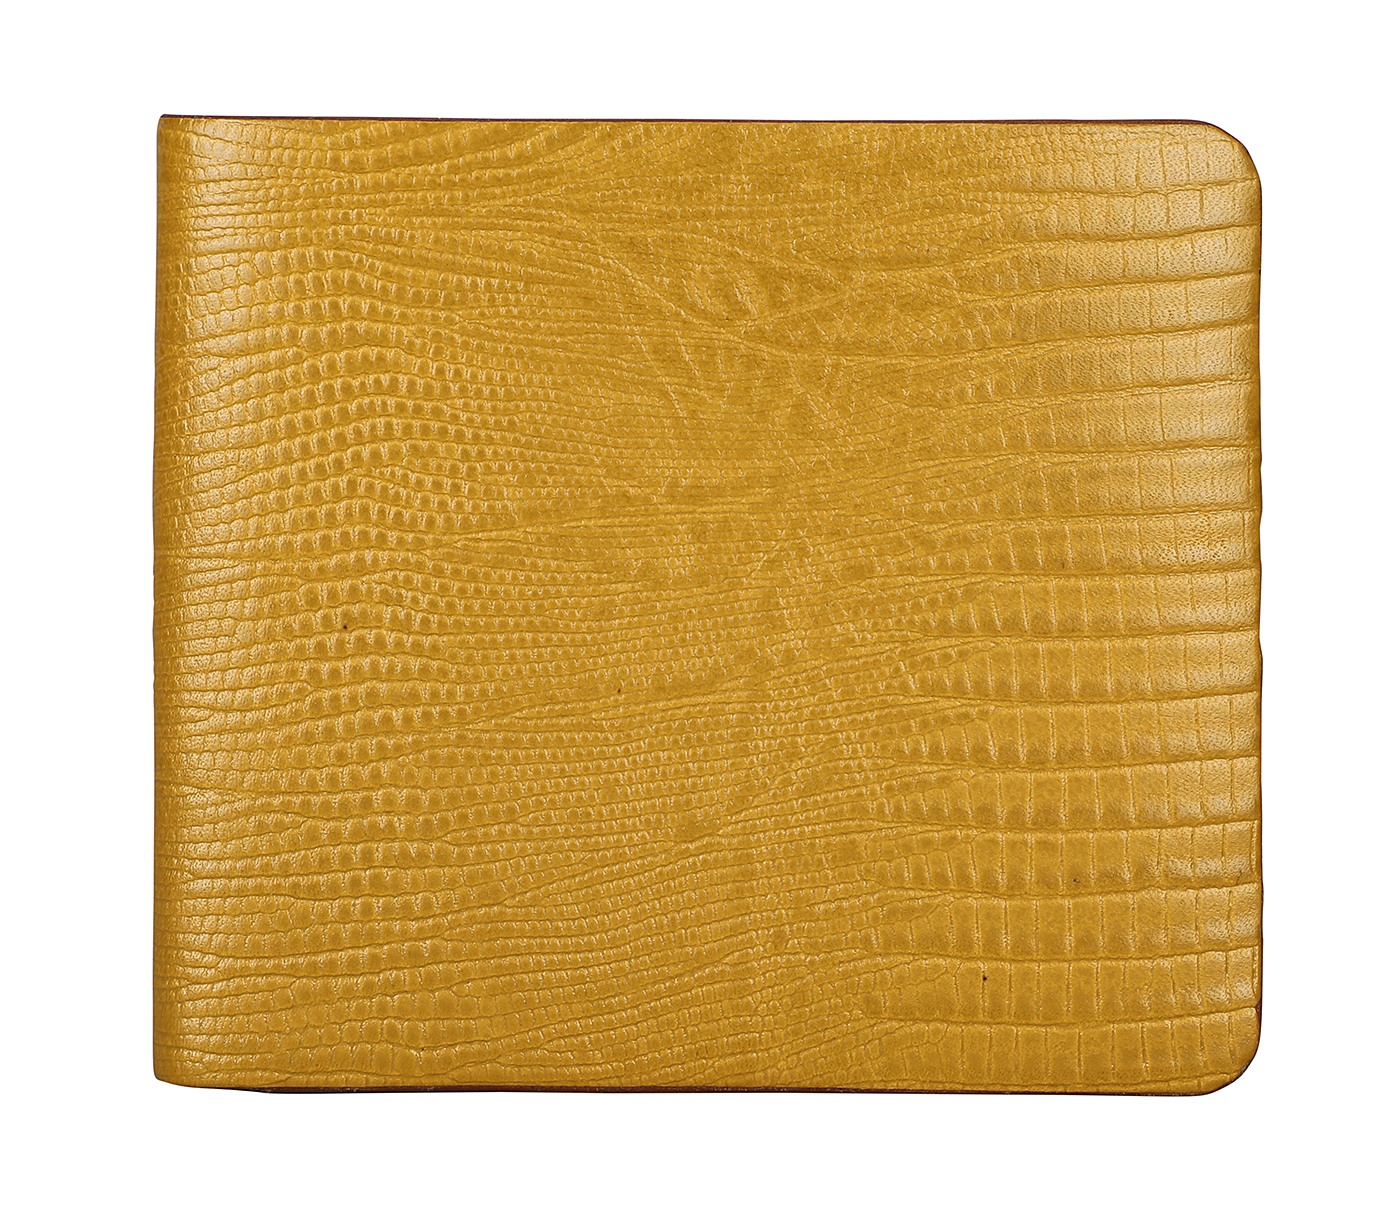 VW19-Manuel-Men's bifold wallet in genuine leather - Mustard